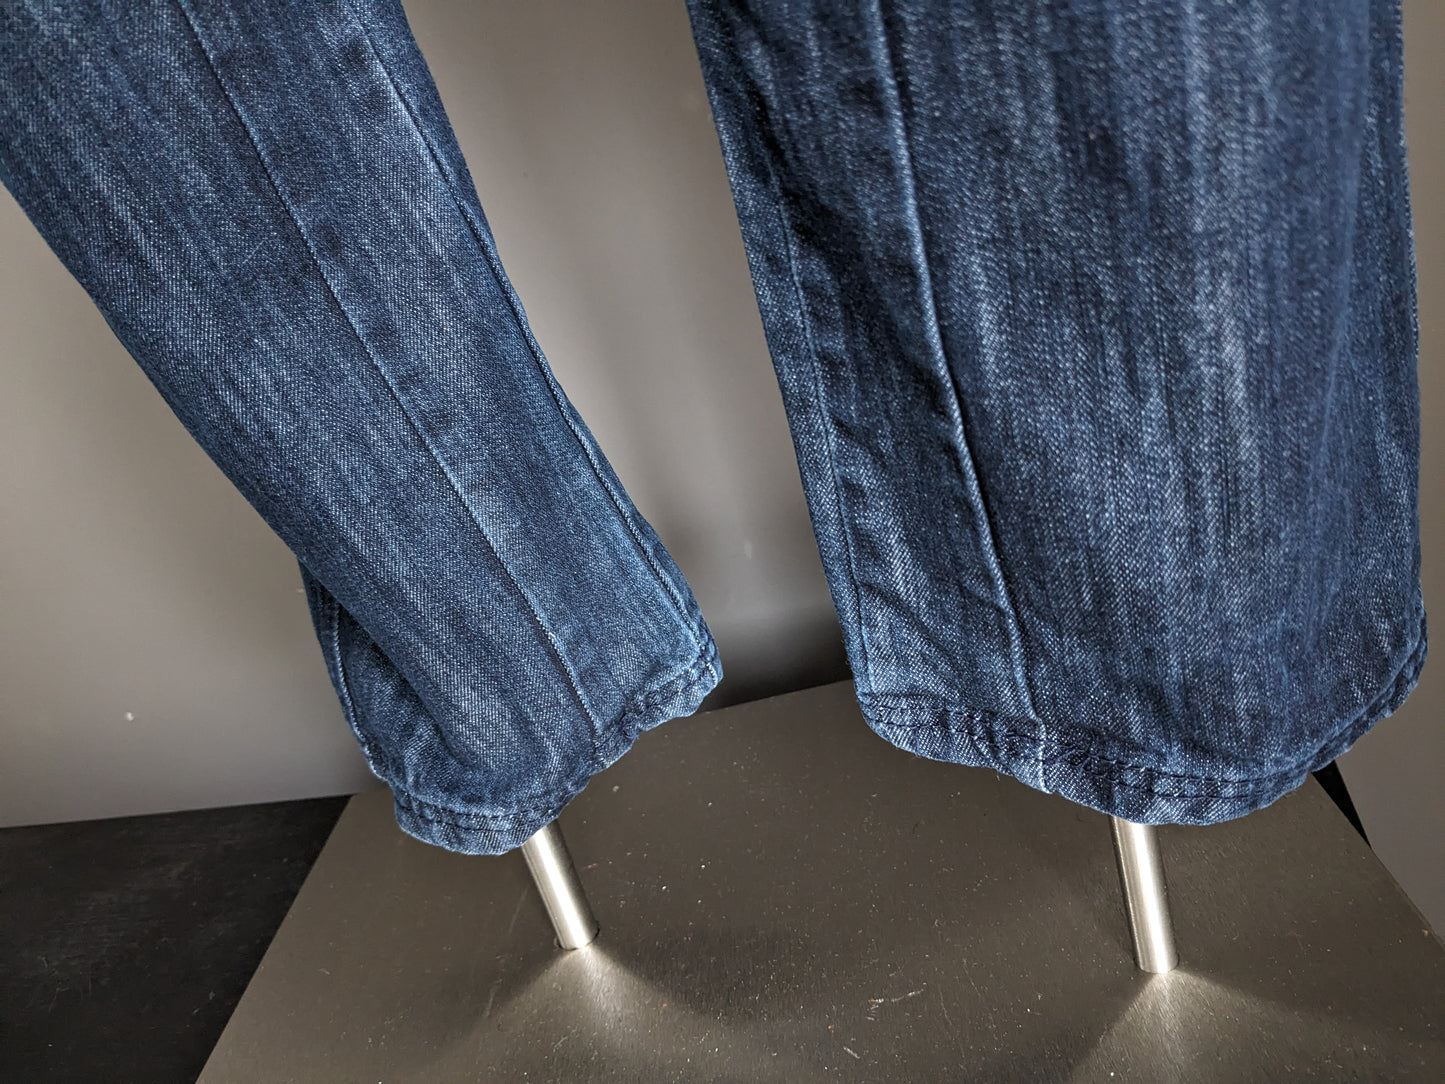 Jeans realizzati. Colorato blu scuro. Taglia W32 - L34.